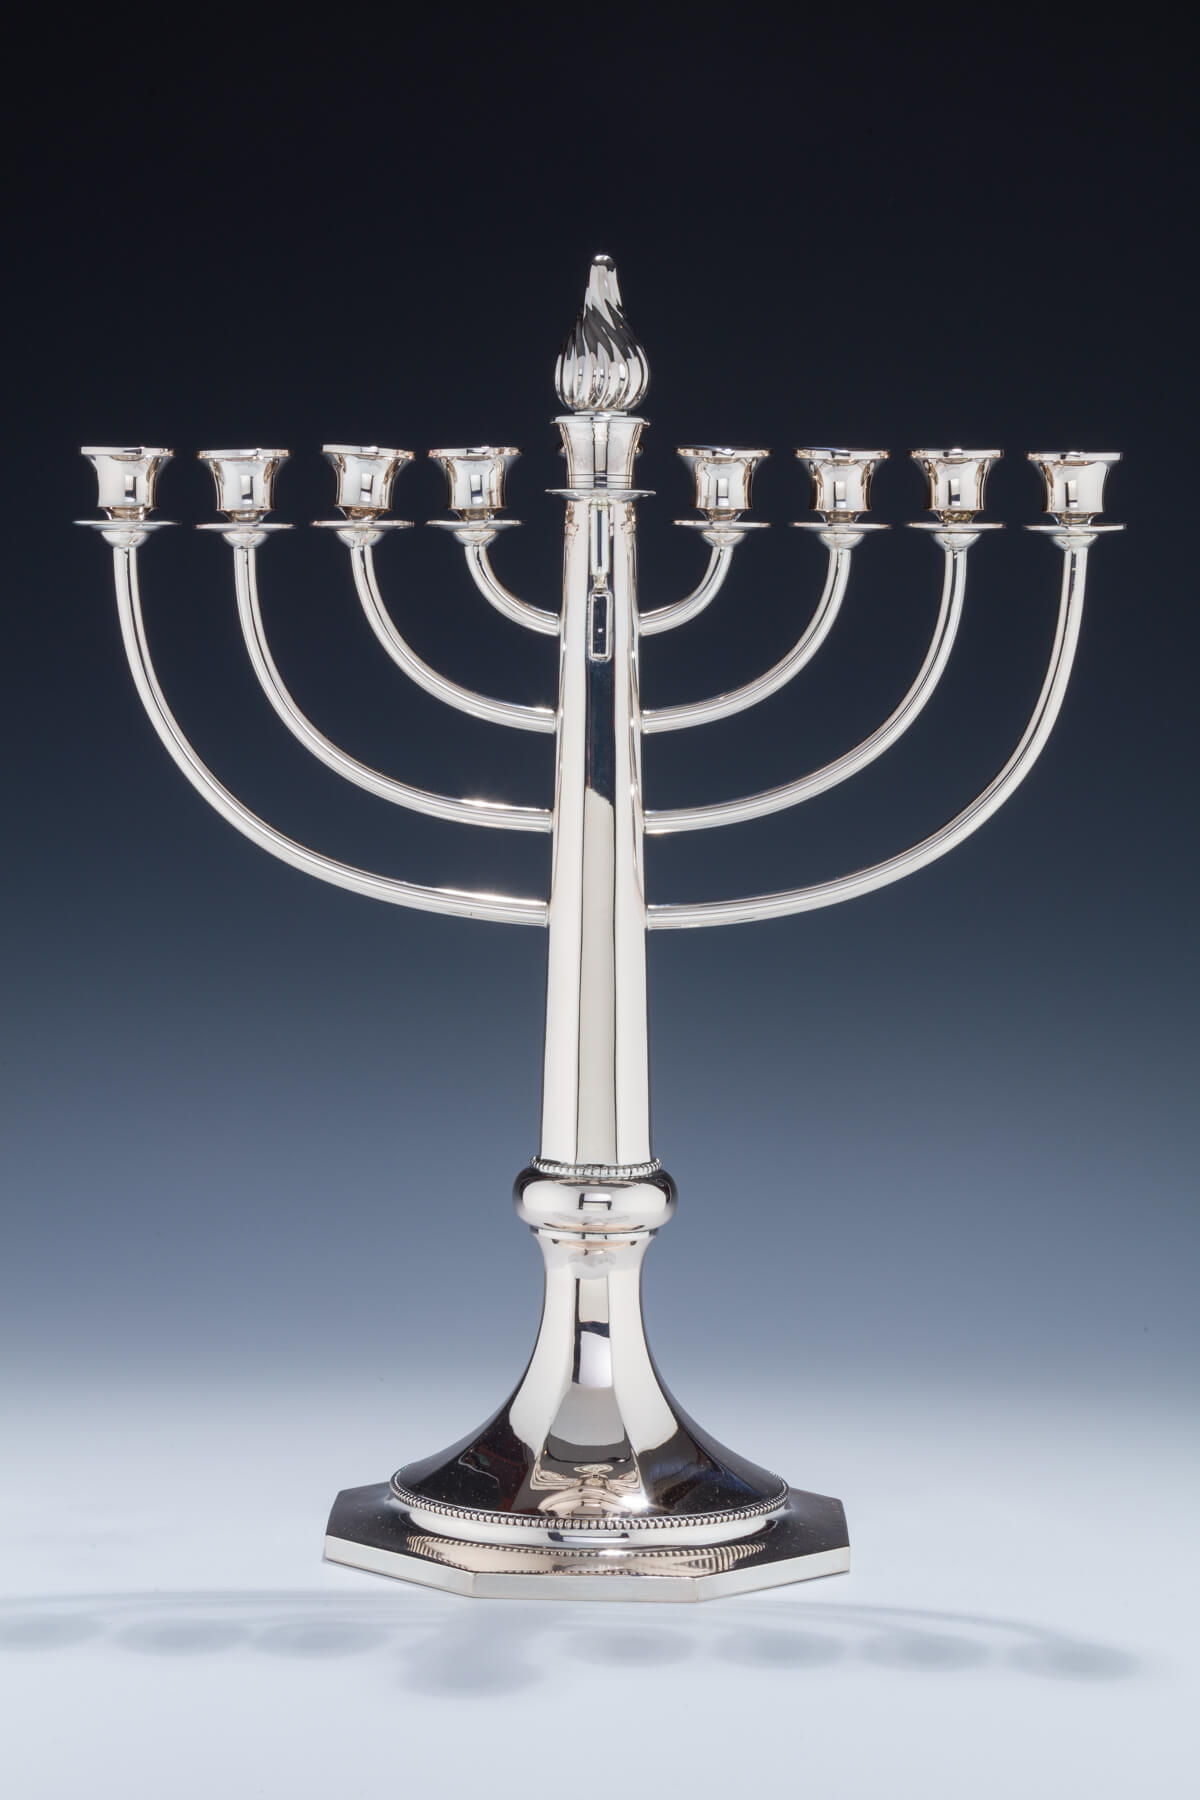 093. A Large Silver Hanukkah Menorah